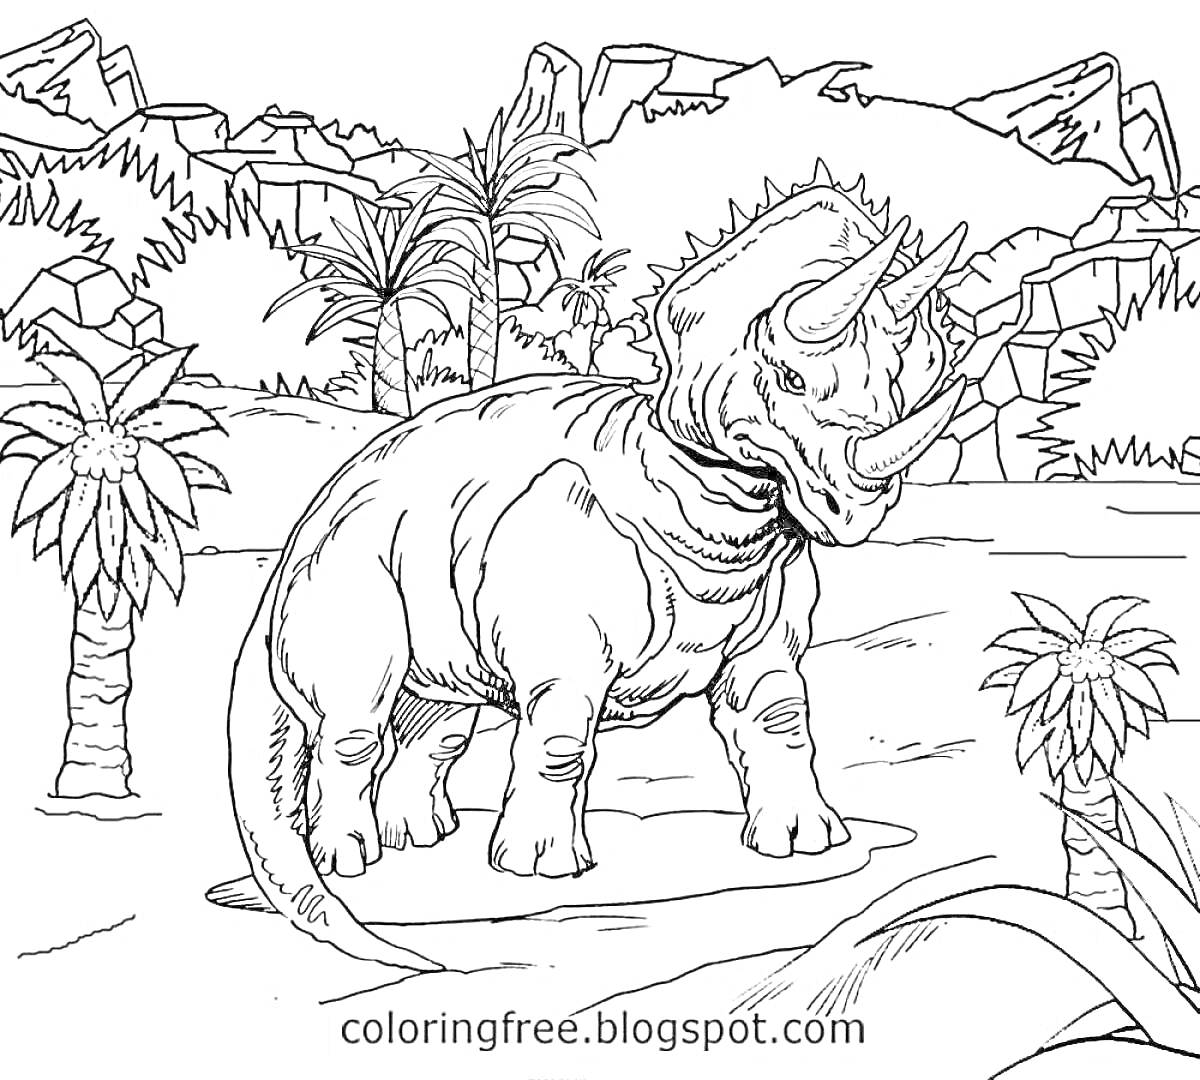 Раскраска Динозавр с тремя рогами среди юрского леса с пальмами и горами на заднем плане